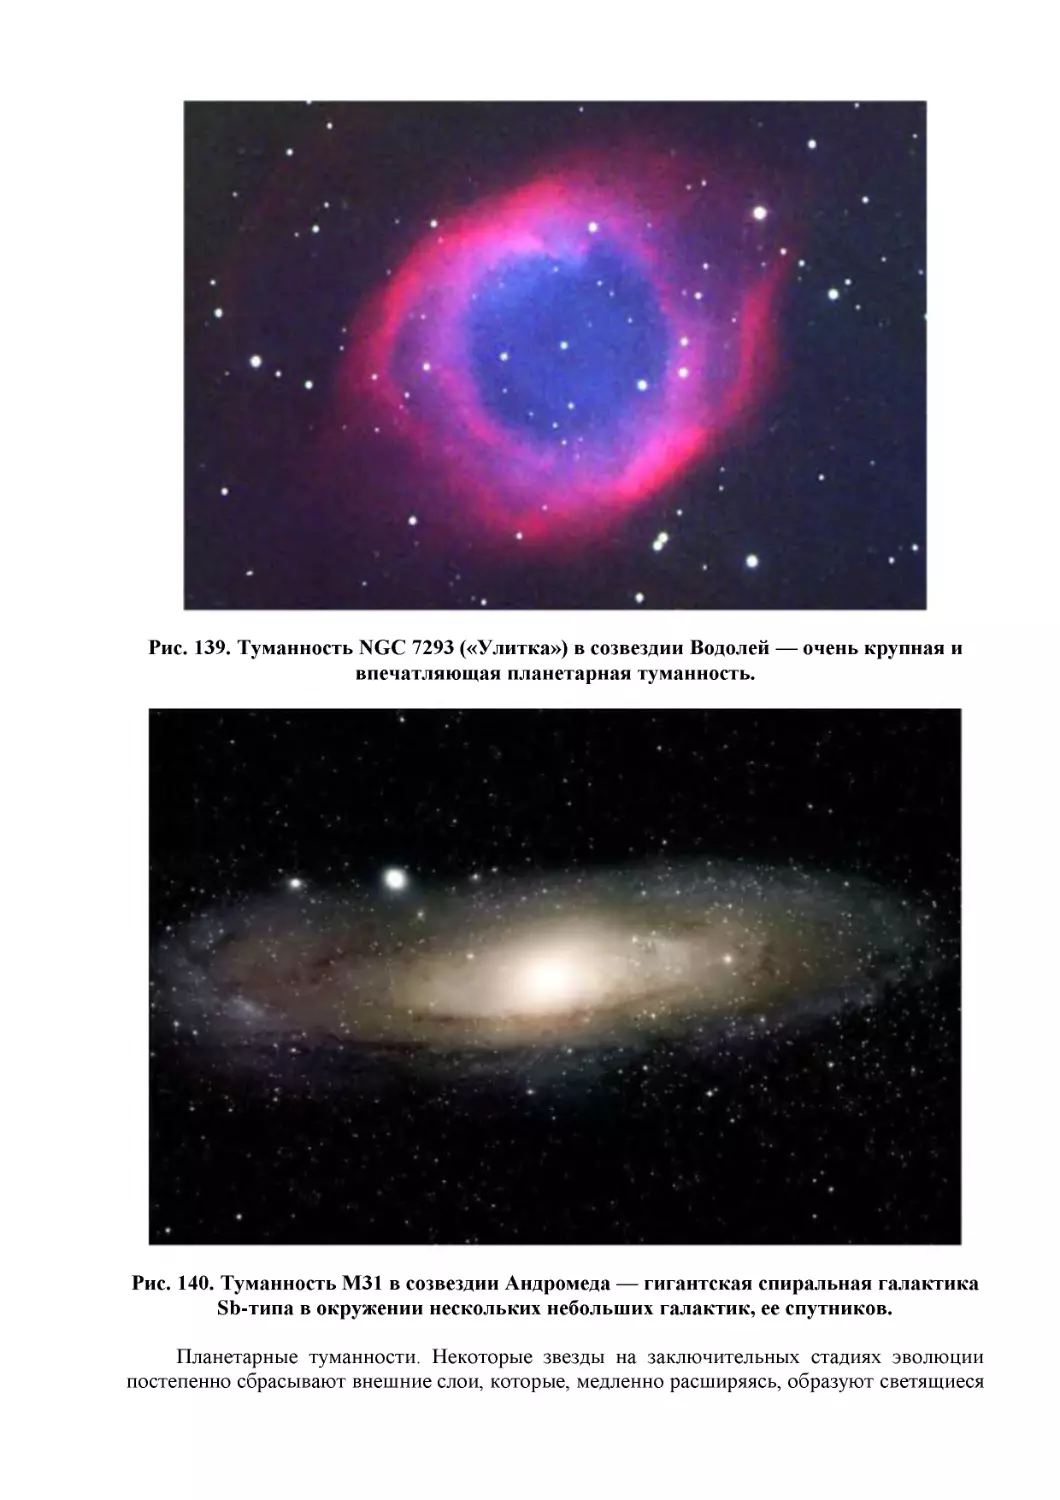 Рис. 139. Туманность NGC 7293 («Улитка») в созвездии Водолей — очень крупная и впечатляющая планетарная туманность.
Рис. 140. Туманность М31 в созвездии Андромеда — гигантская спиральная галактика Sb-типа в окружении нескольких небольших галактик, ее спутников.